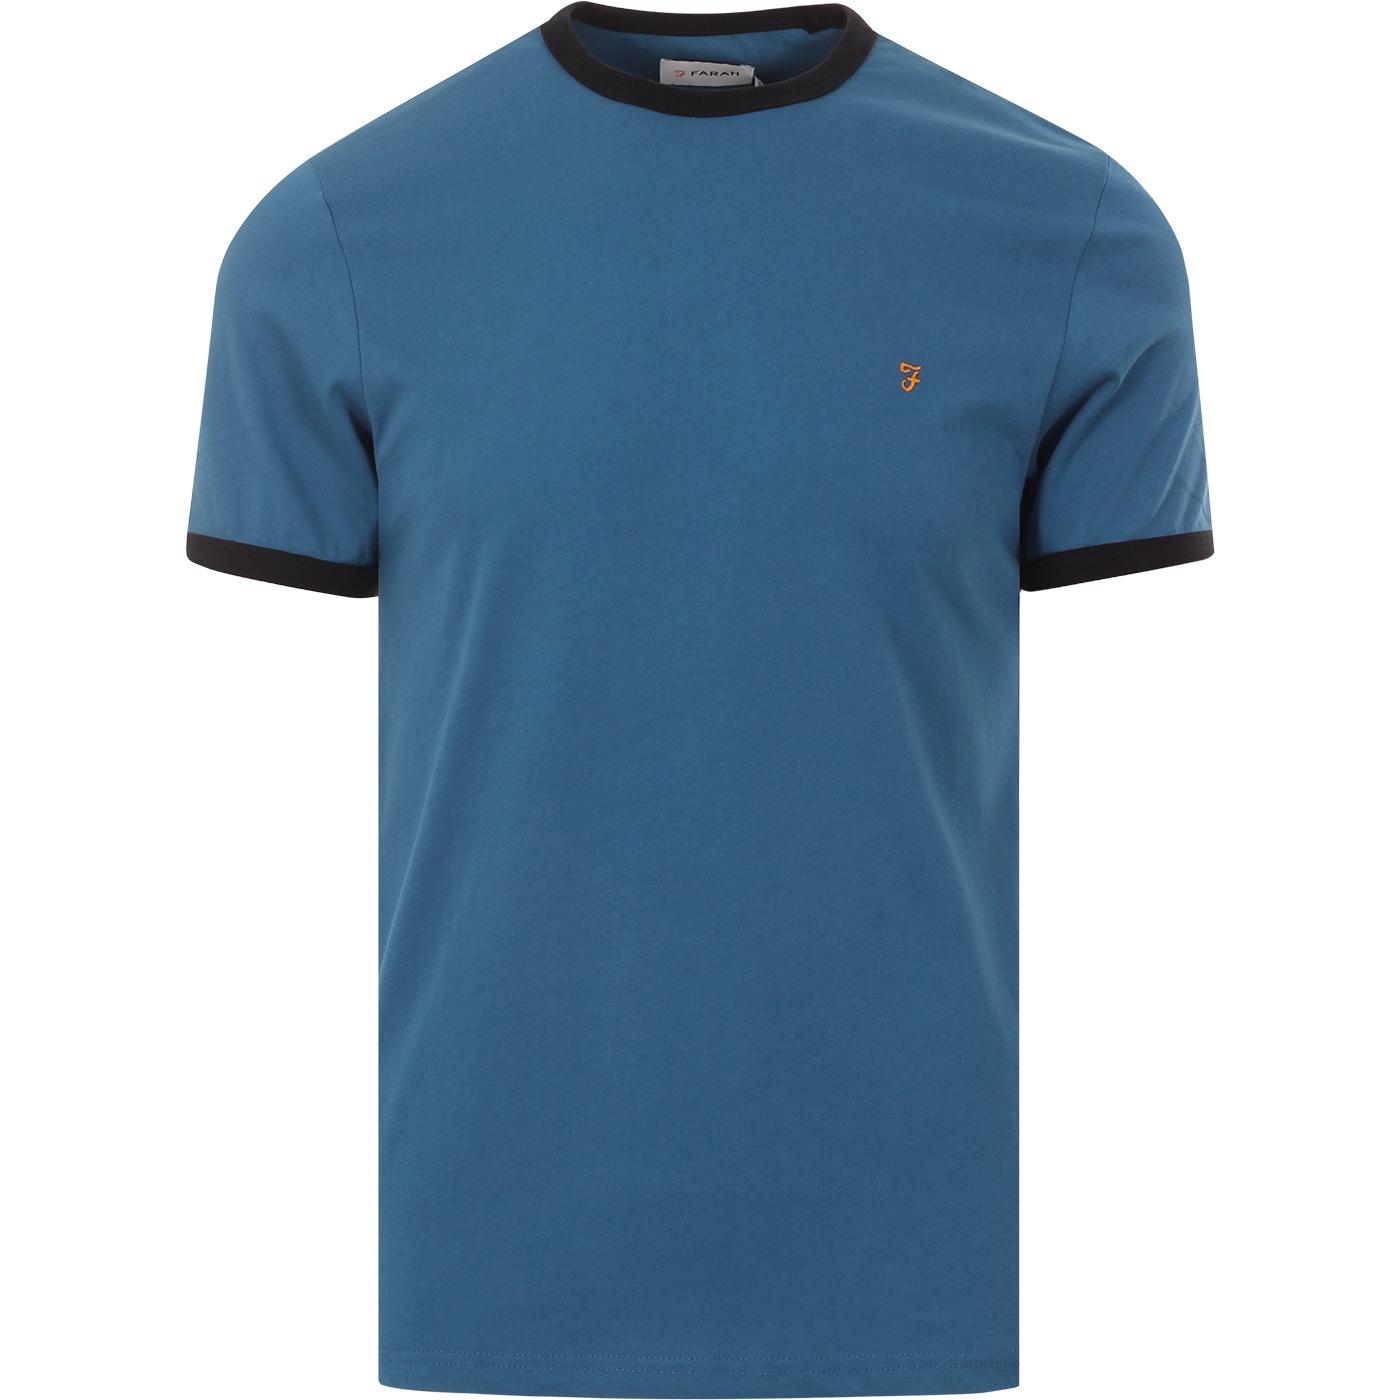 FARAH Groves Men's Retro Mod Ringer T-Shirt in Farah Blue